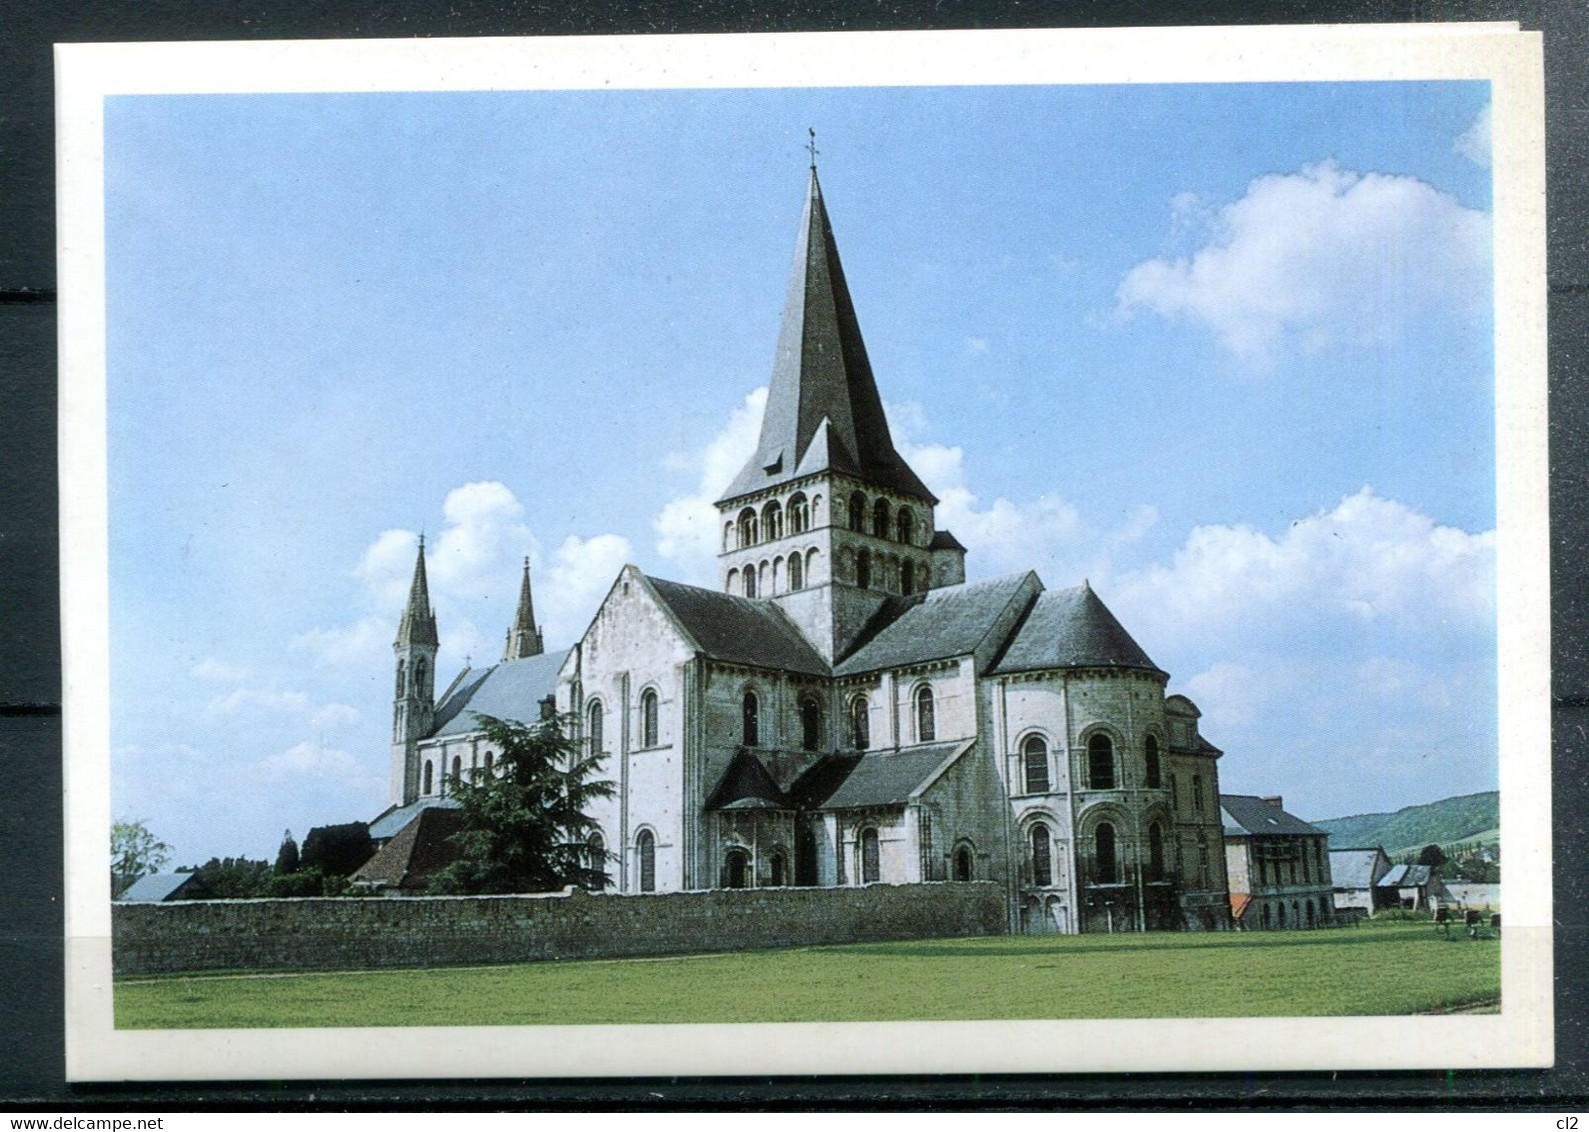 SAINT MARTIN DE BOSCHERVILLE - Abbaye Saint Georges - Chevet, Transept Et Tour Lanterne (carte De Vœux Vierge) - Saint-Martin-de-Boscherville